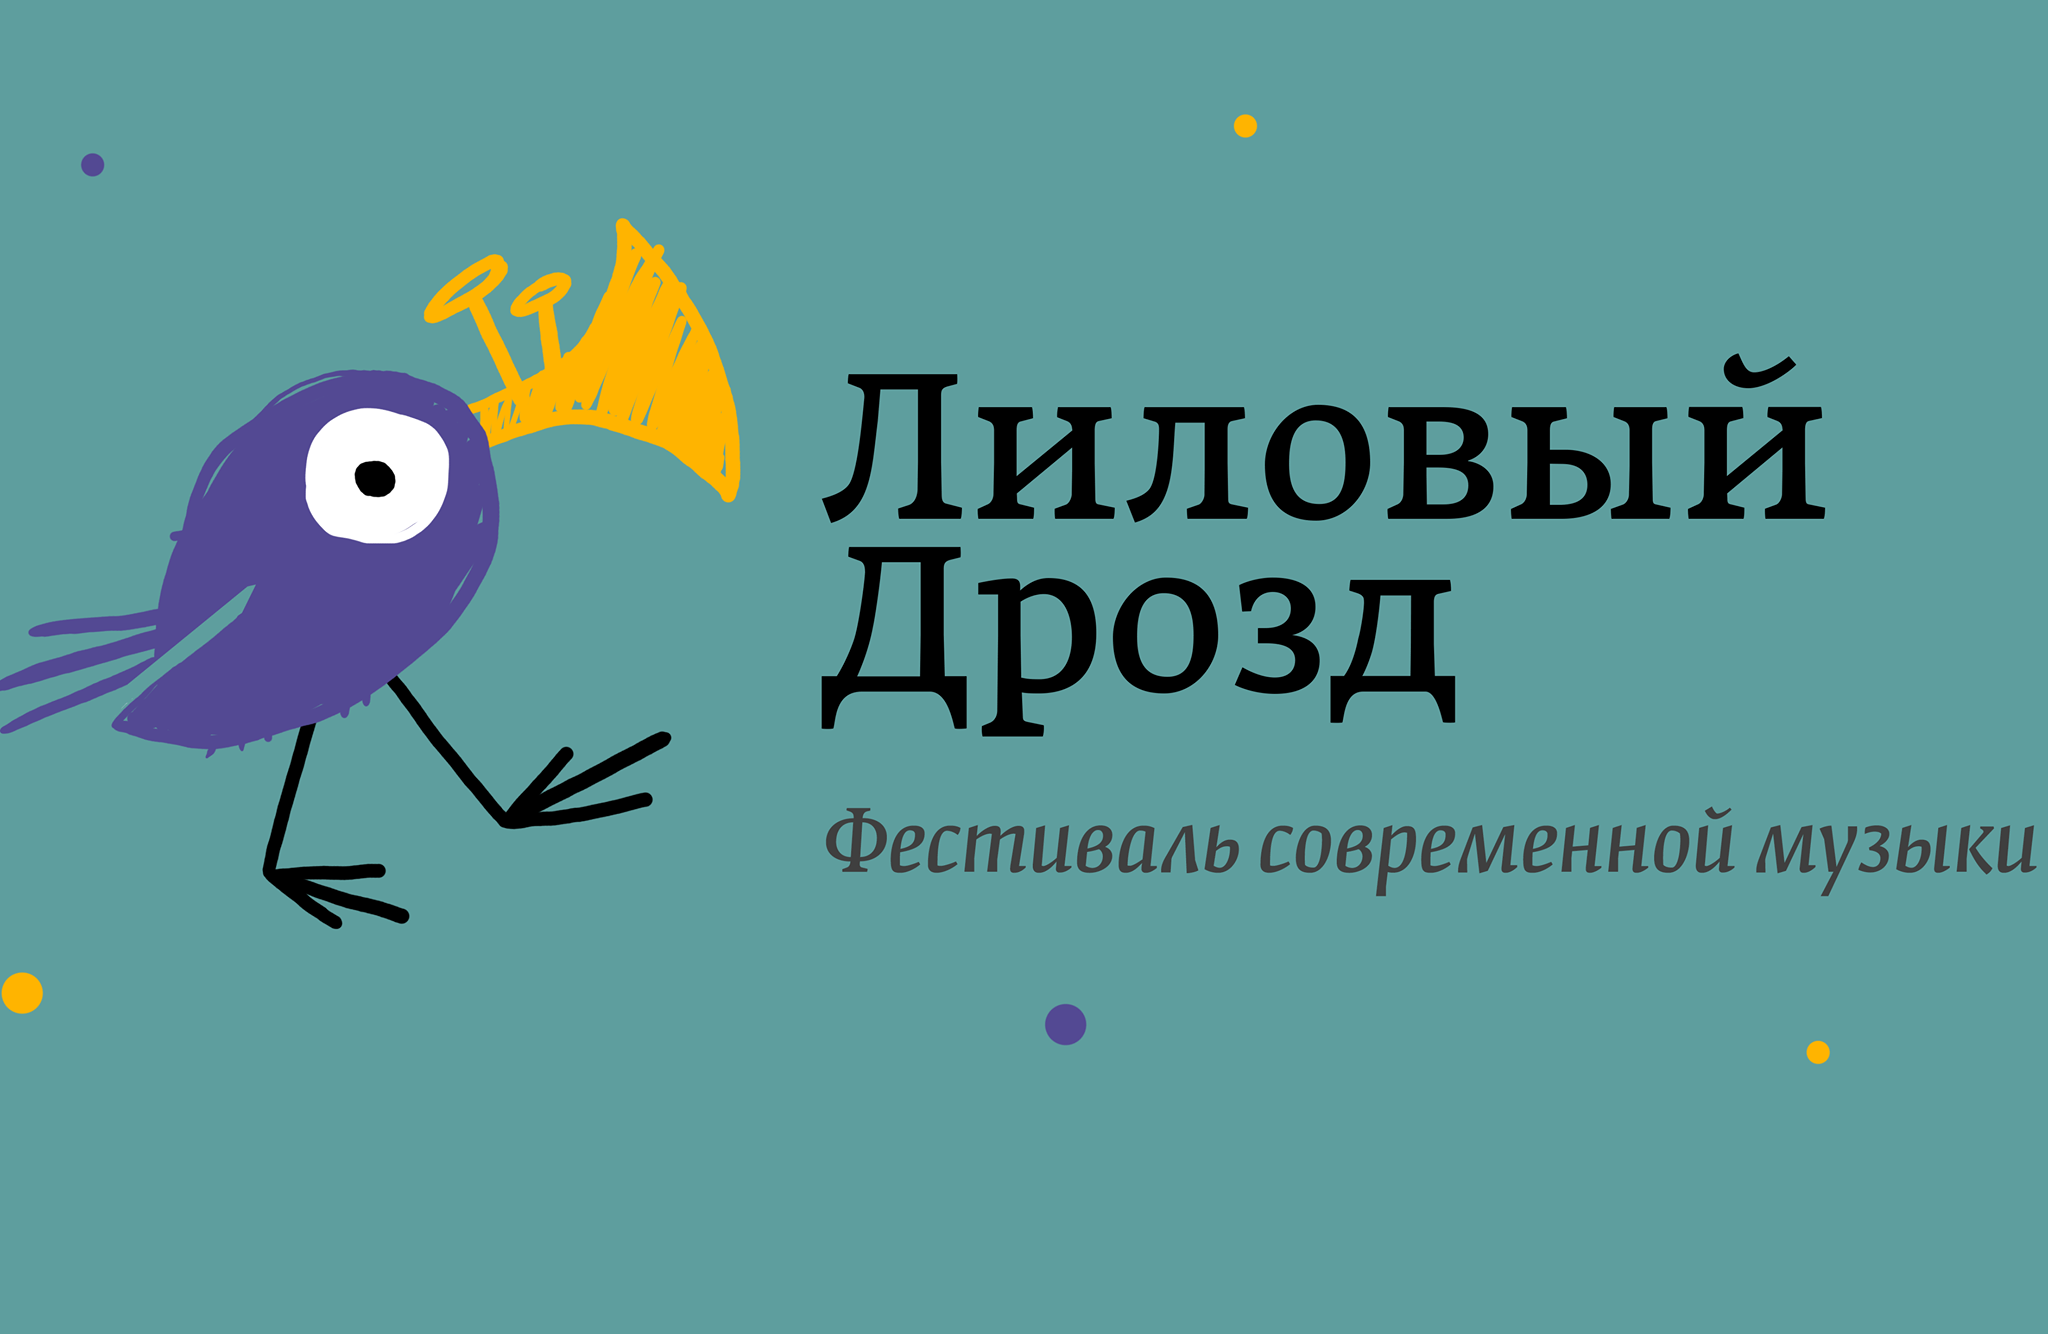 Фестиваль «Лиловый дрозд» пройдет при поддержке НФПП